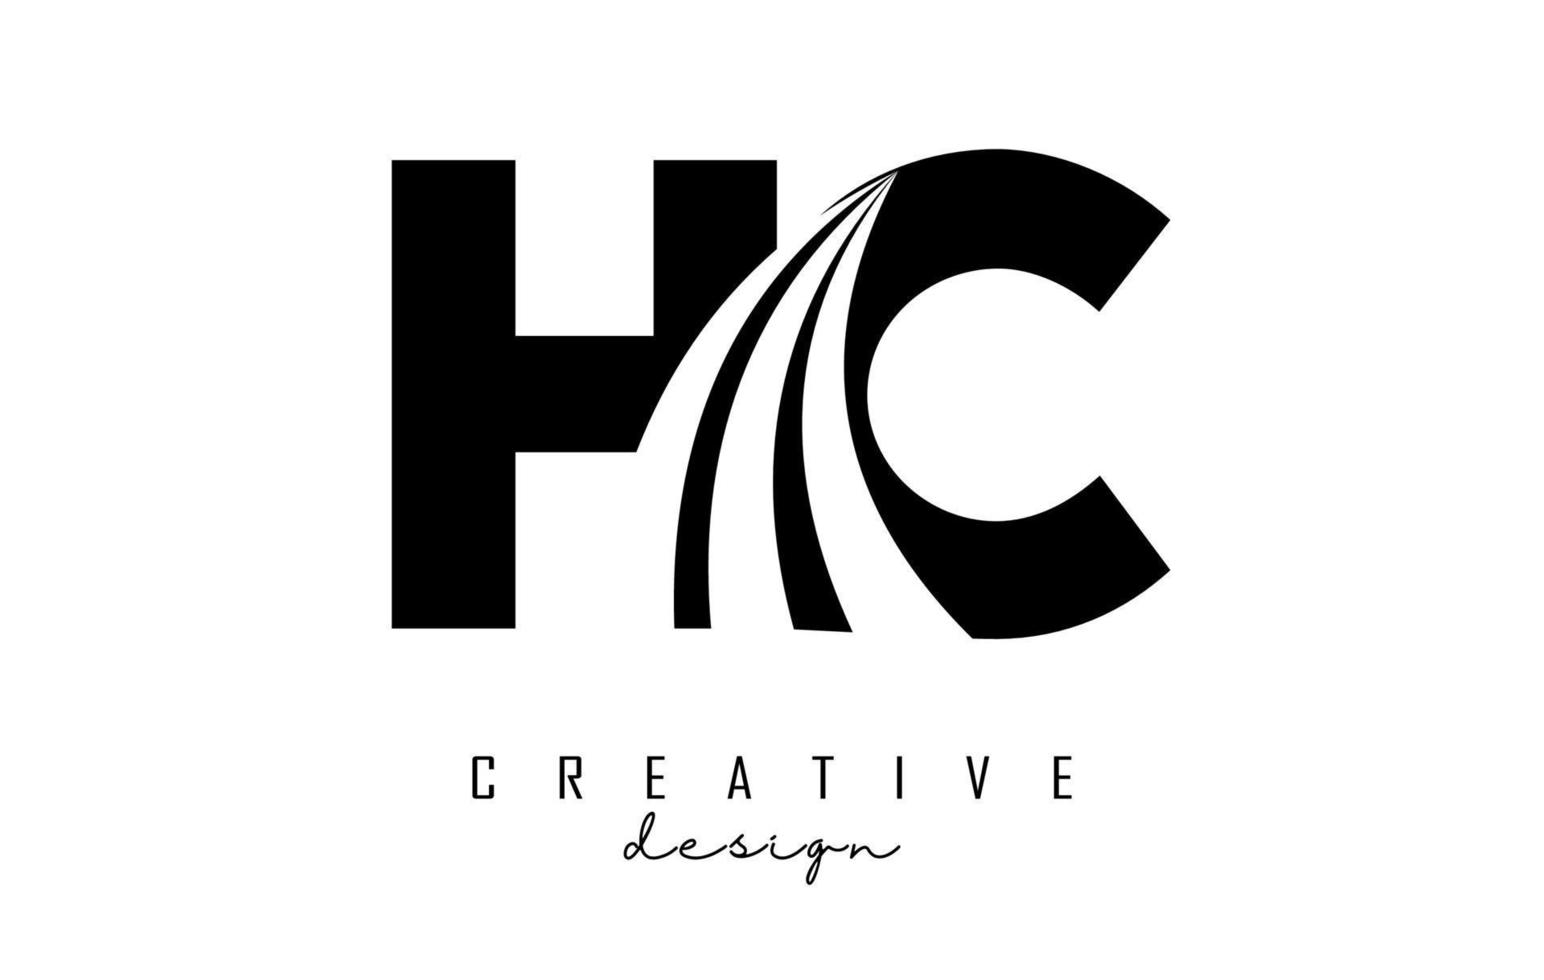 lettres noires créatives logo hc hc avec lignes directrices et conception de concept de route. lettres avec un dessin géométrique. vecteur